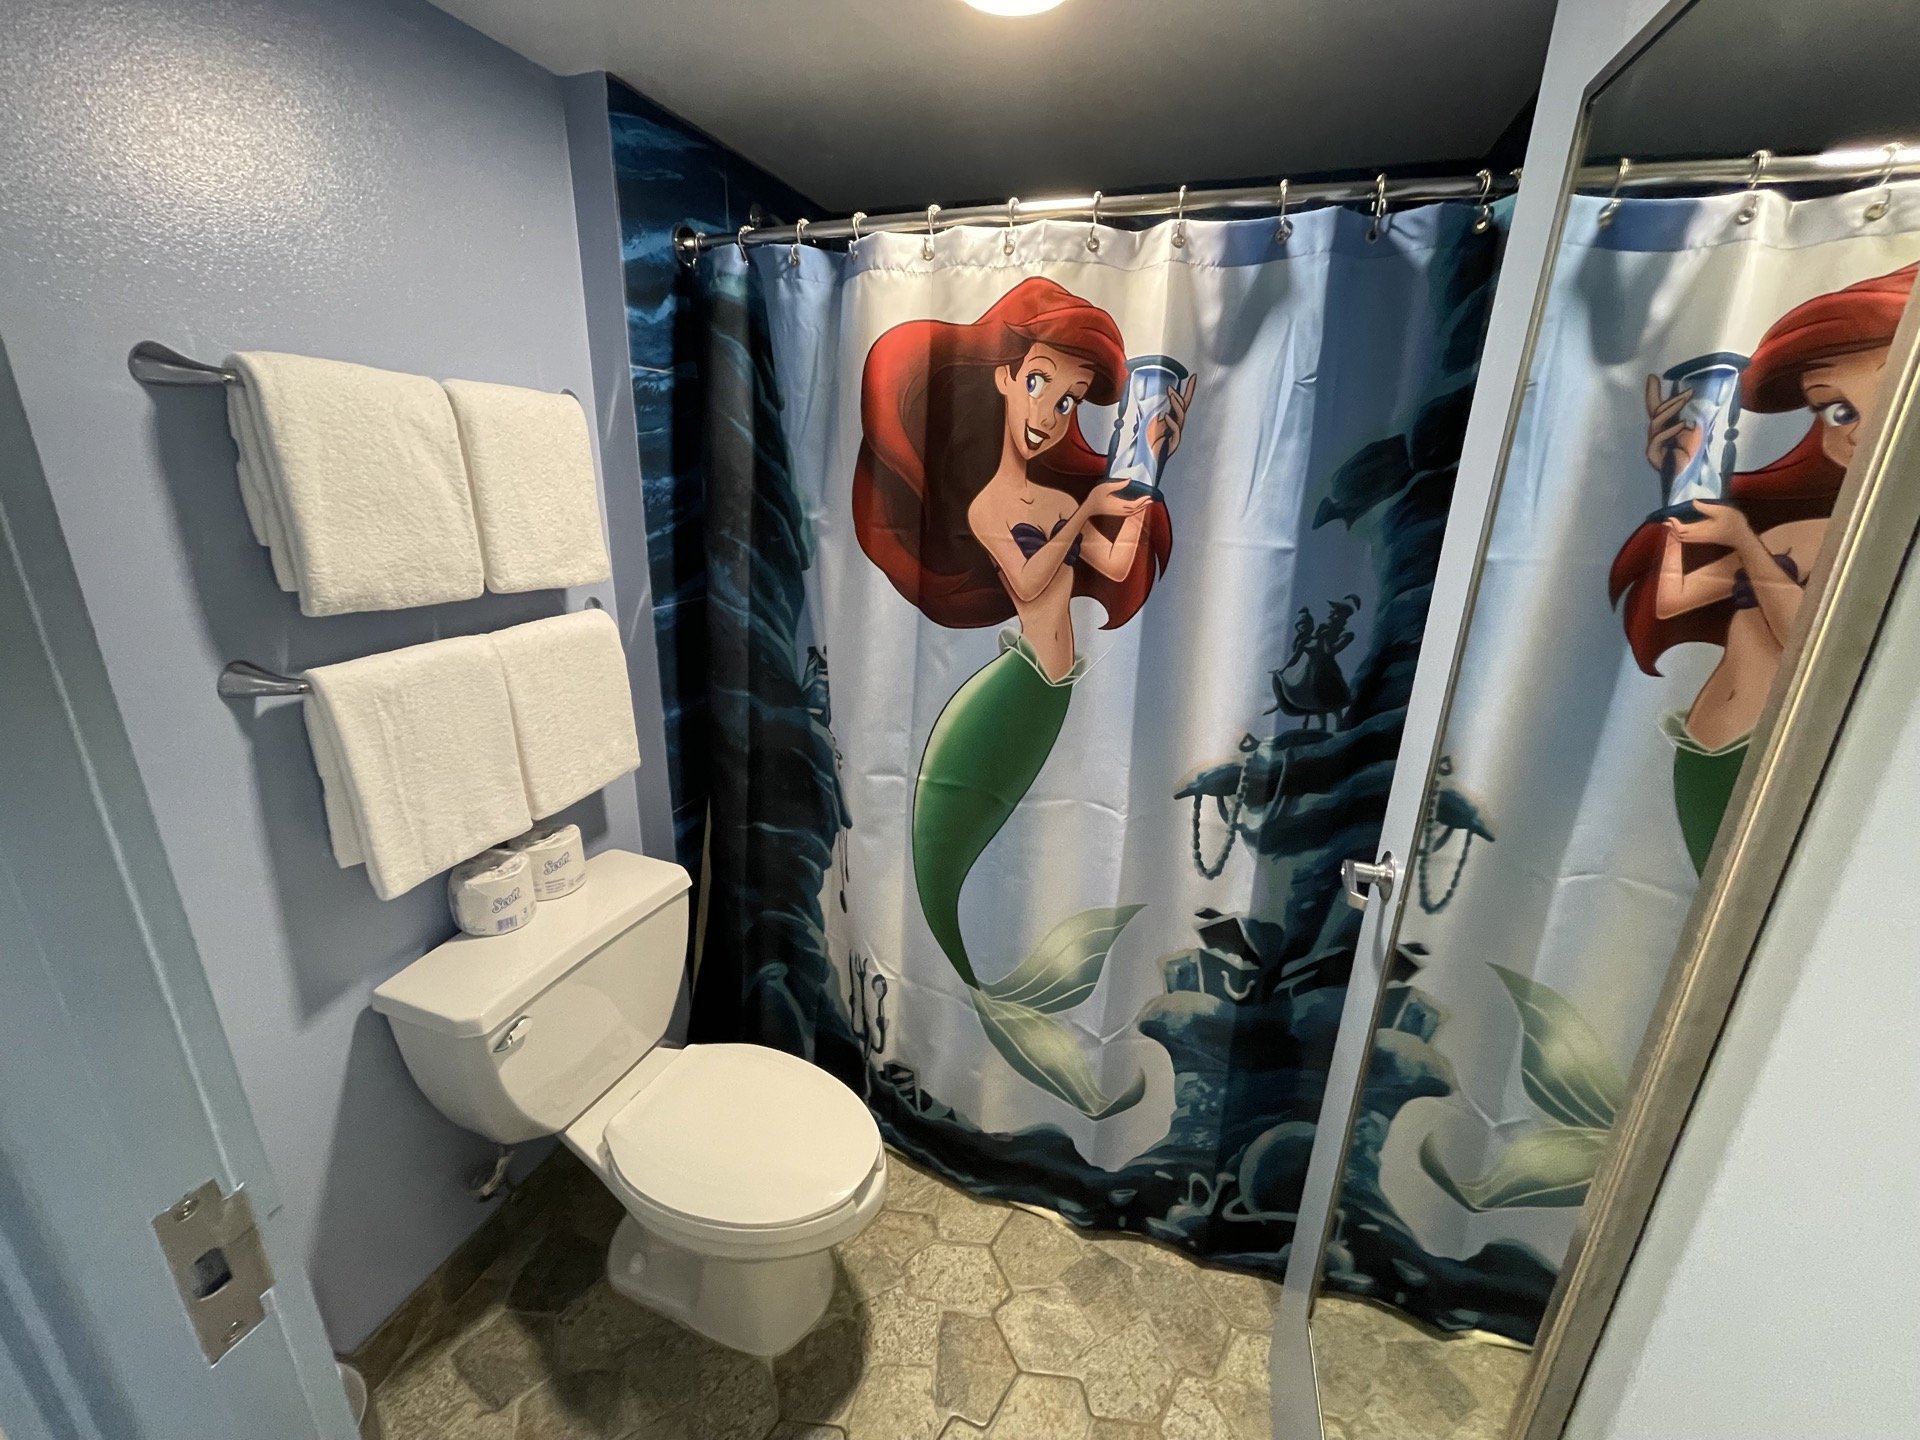 disneys-art-of-animation-little-mermaid-room-bathroom-03.jpeg